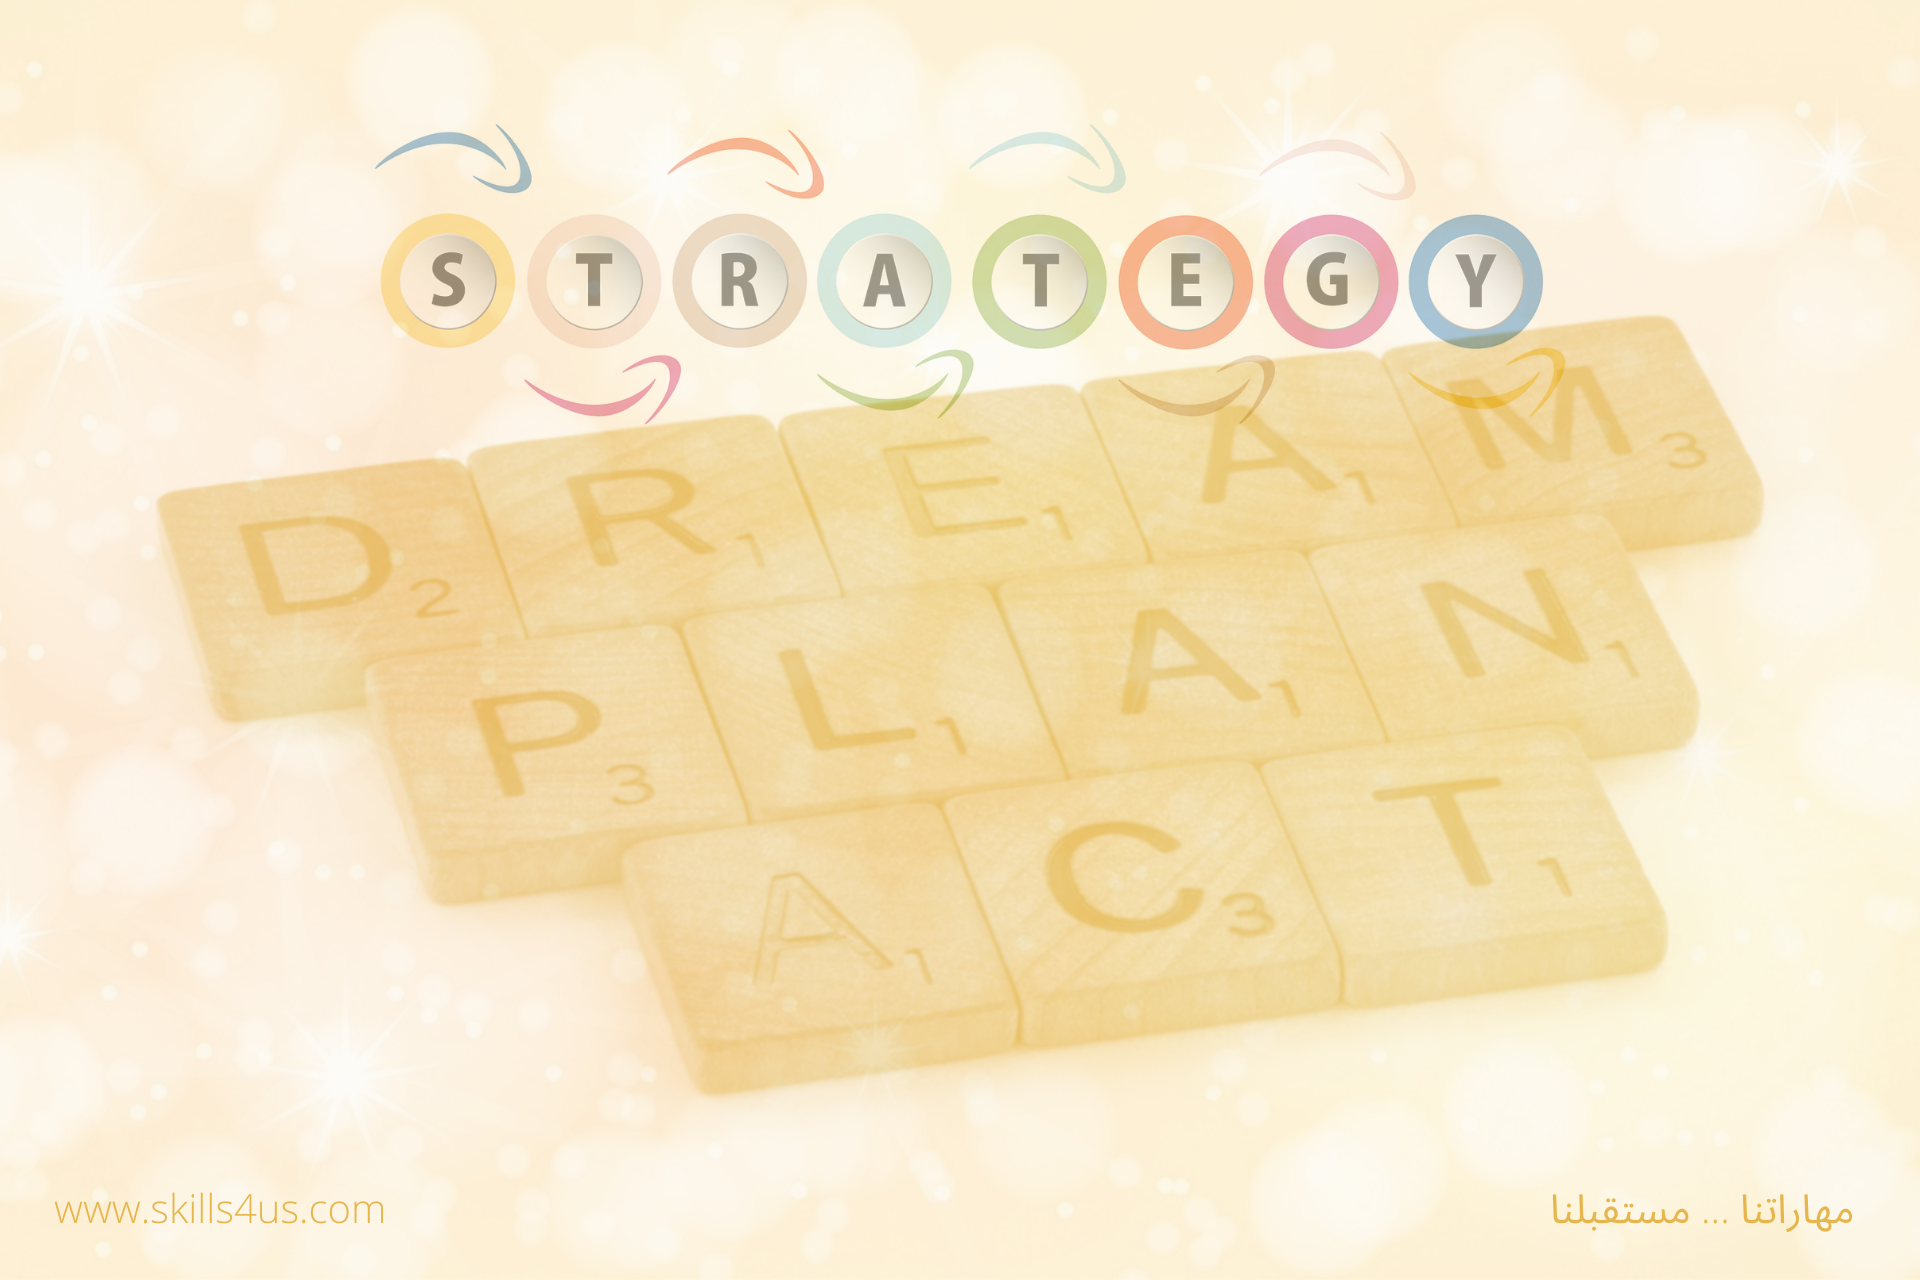 أهم 5 فوائد للتخطيط الاستراتيجي تعزز نجاح المؤسسات